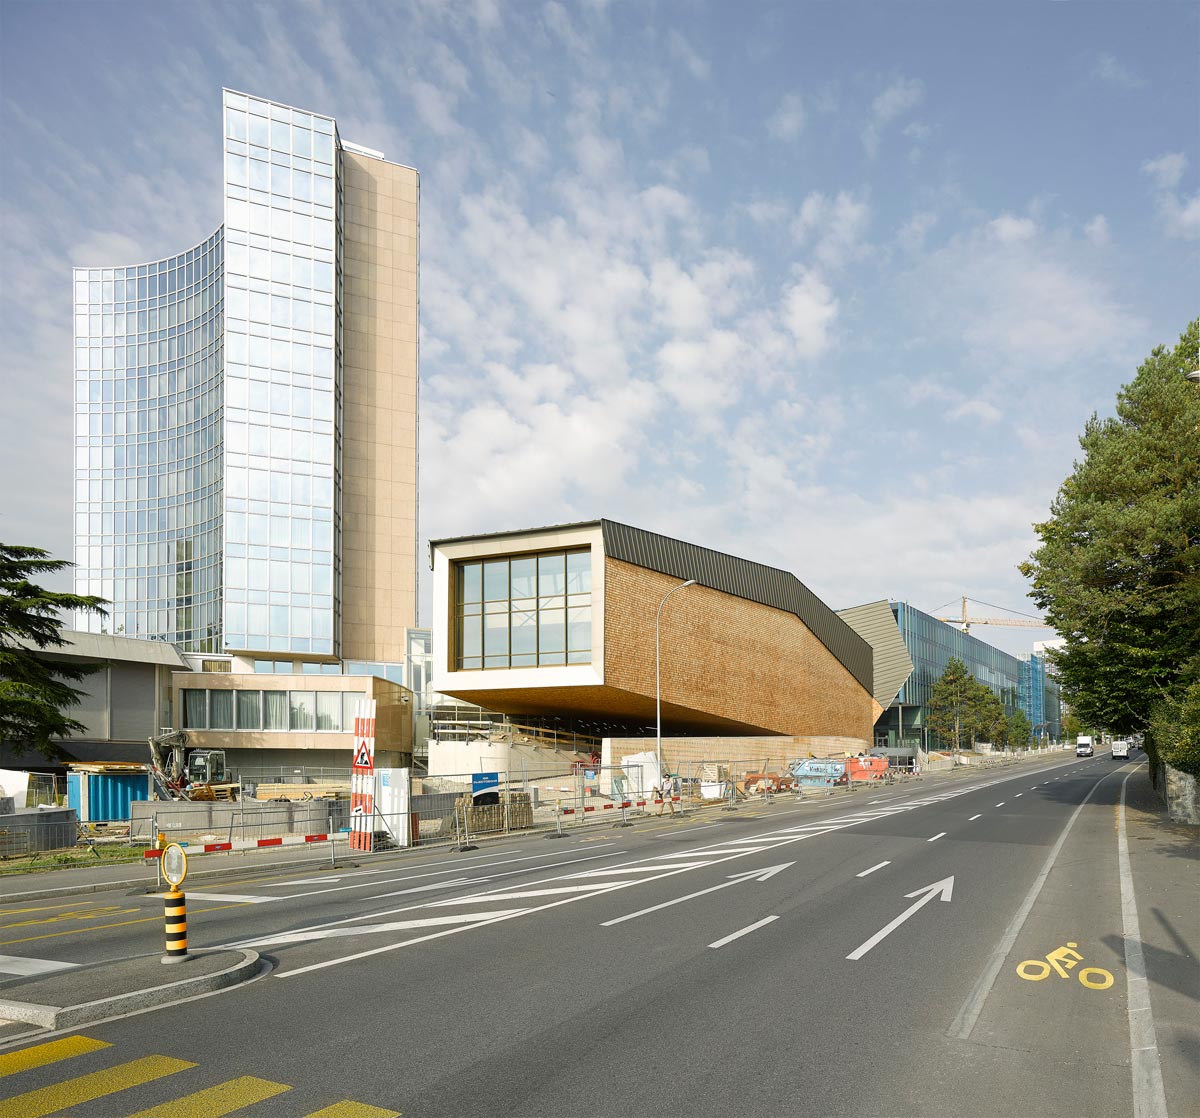 Wipo conference hall, switzerland / behnisch architekten